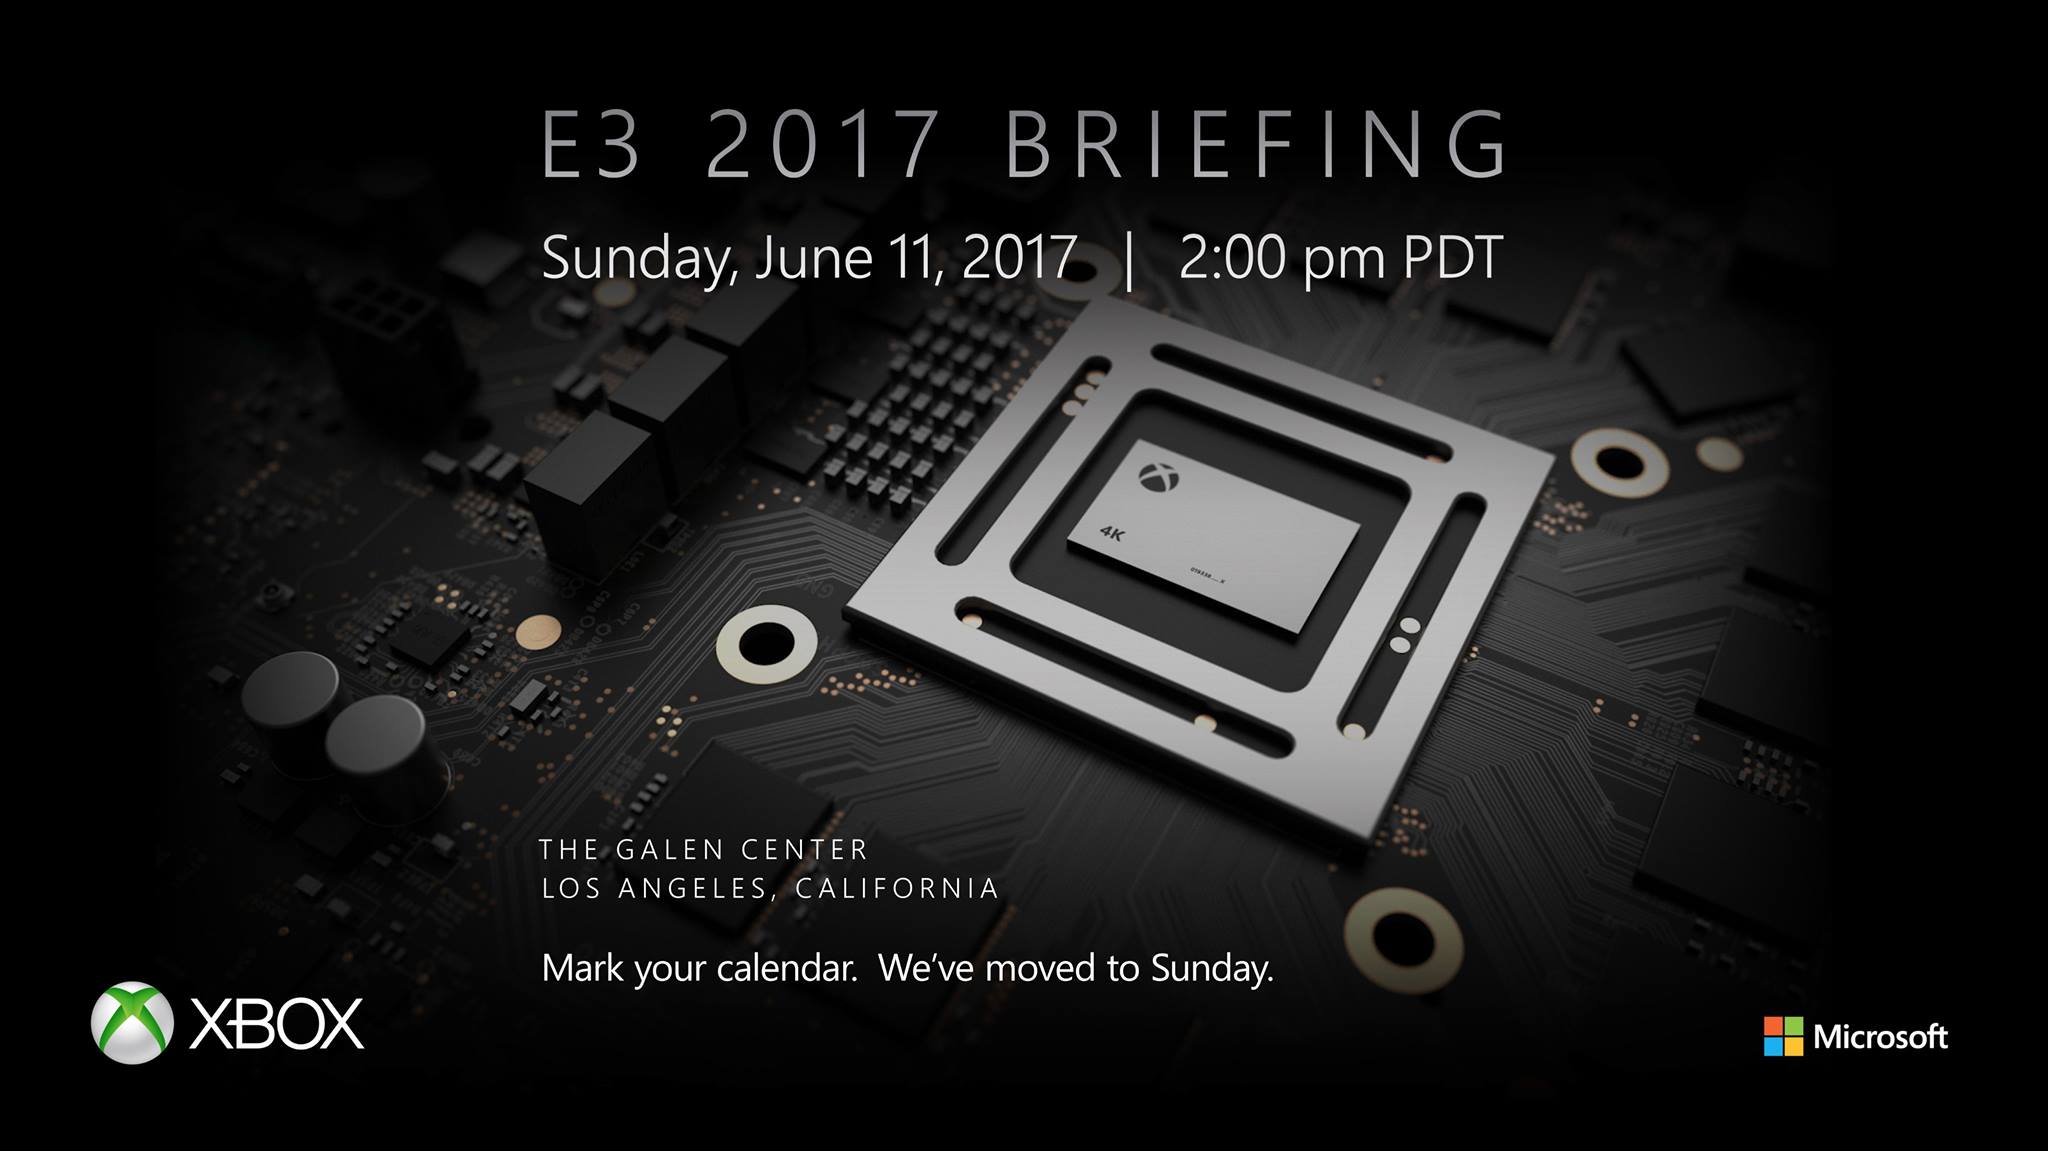 วันที่สองโชว์เดือด!!! Microsoft ขนเกมเจ๋งๆ มาโชว์เพียบใน E3 2017!!!